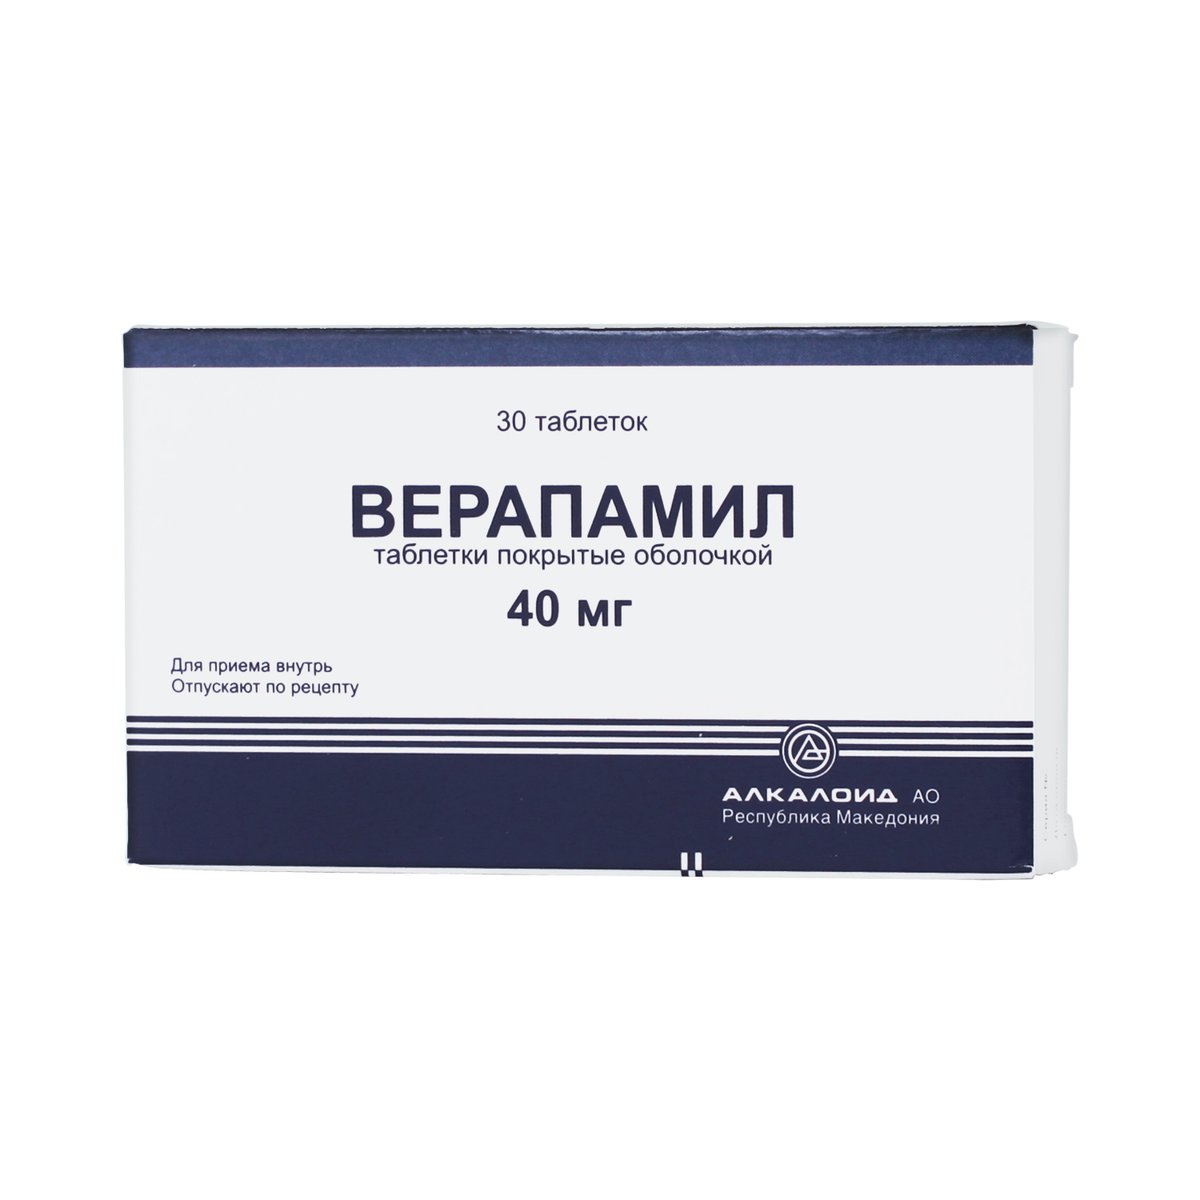 Верапамил алкалоид (таблетки, 30 шт, 40 мг) - цена,  онлайн в .